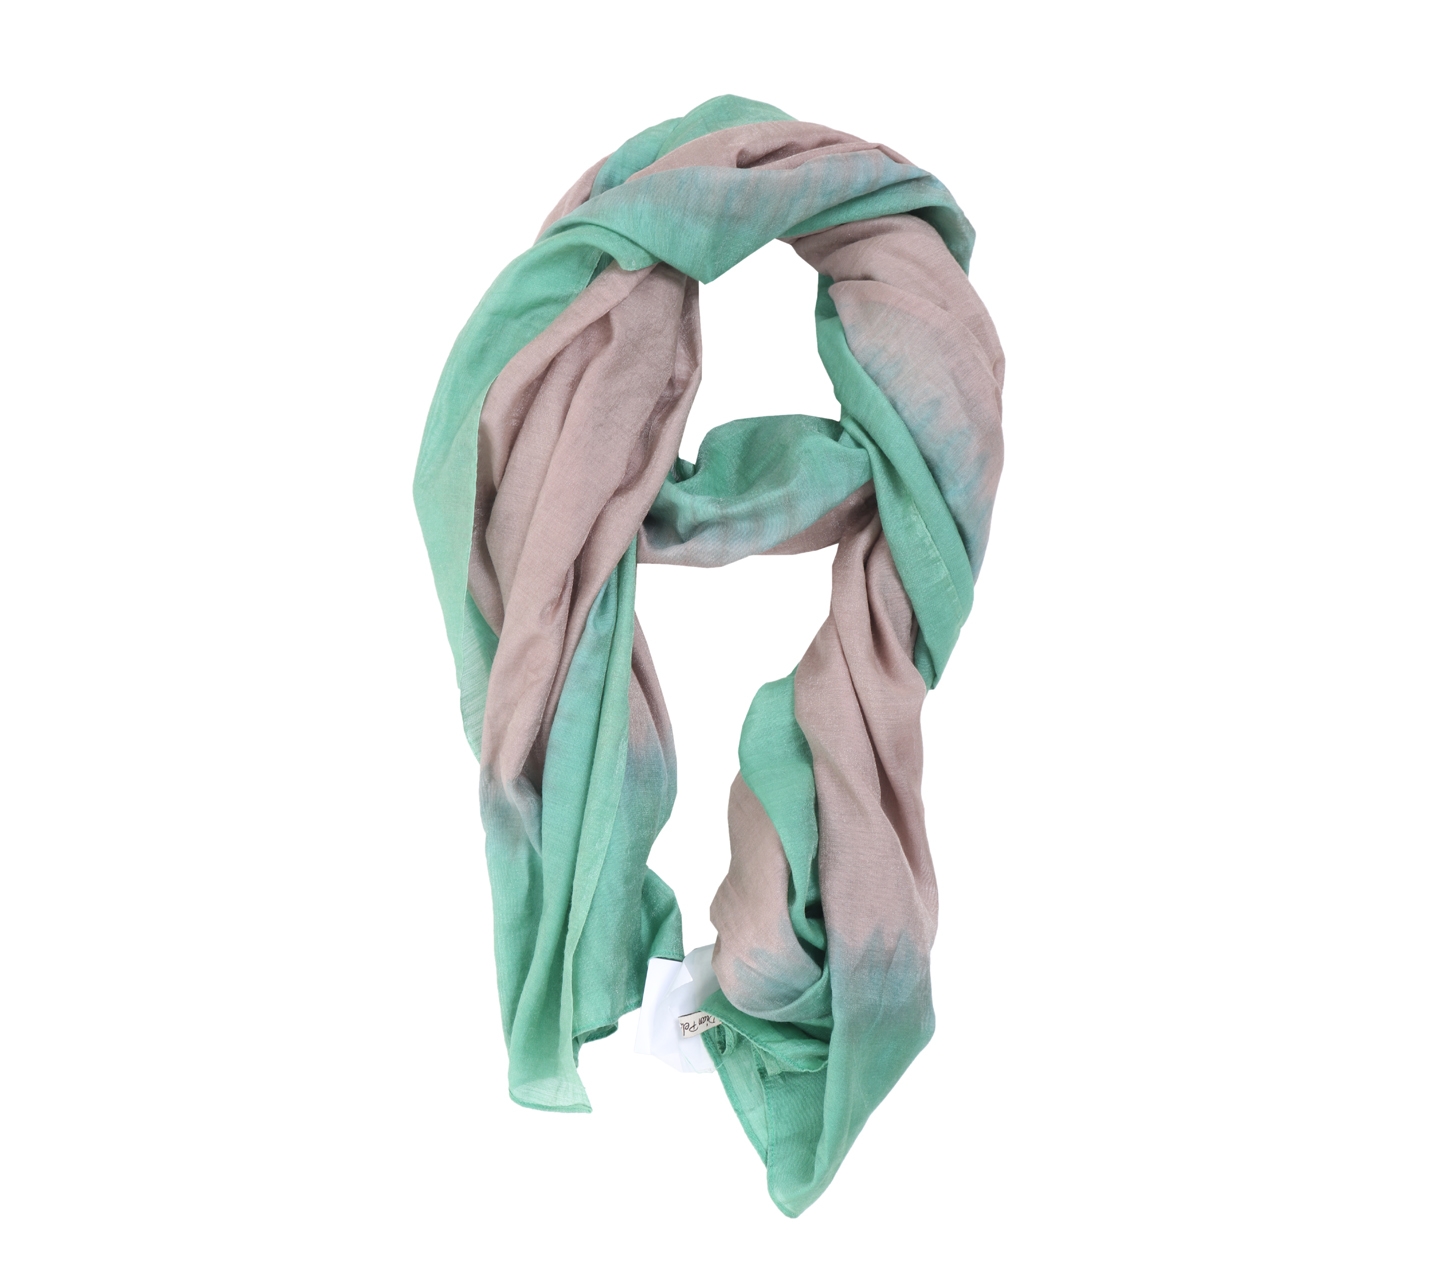 Dian pelangi green brown scarf